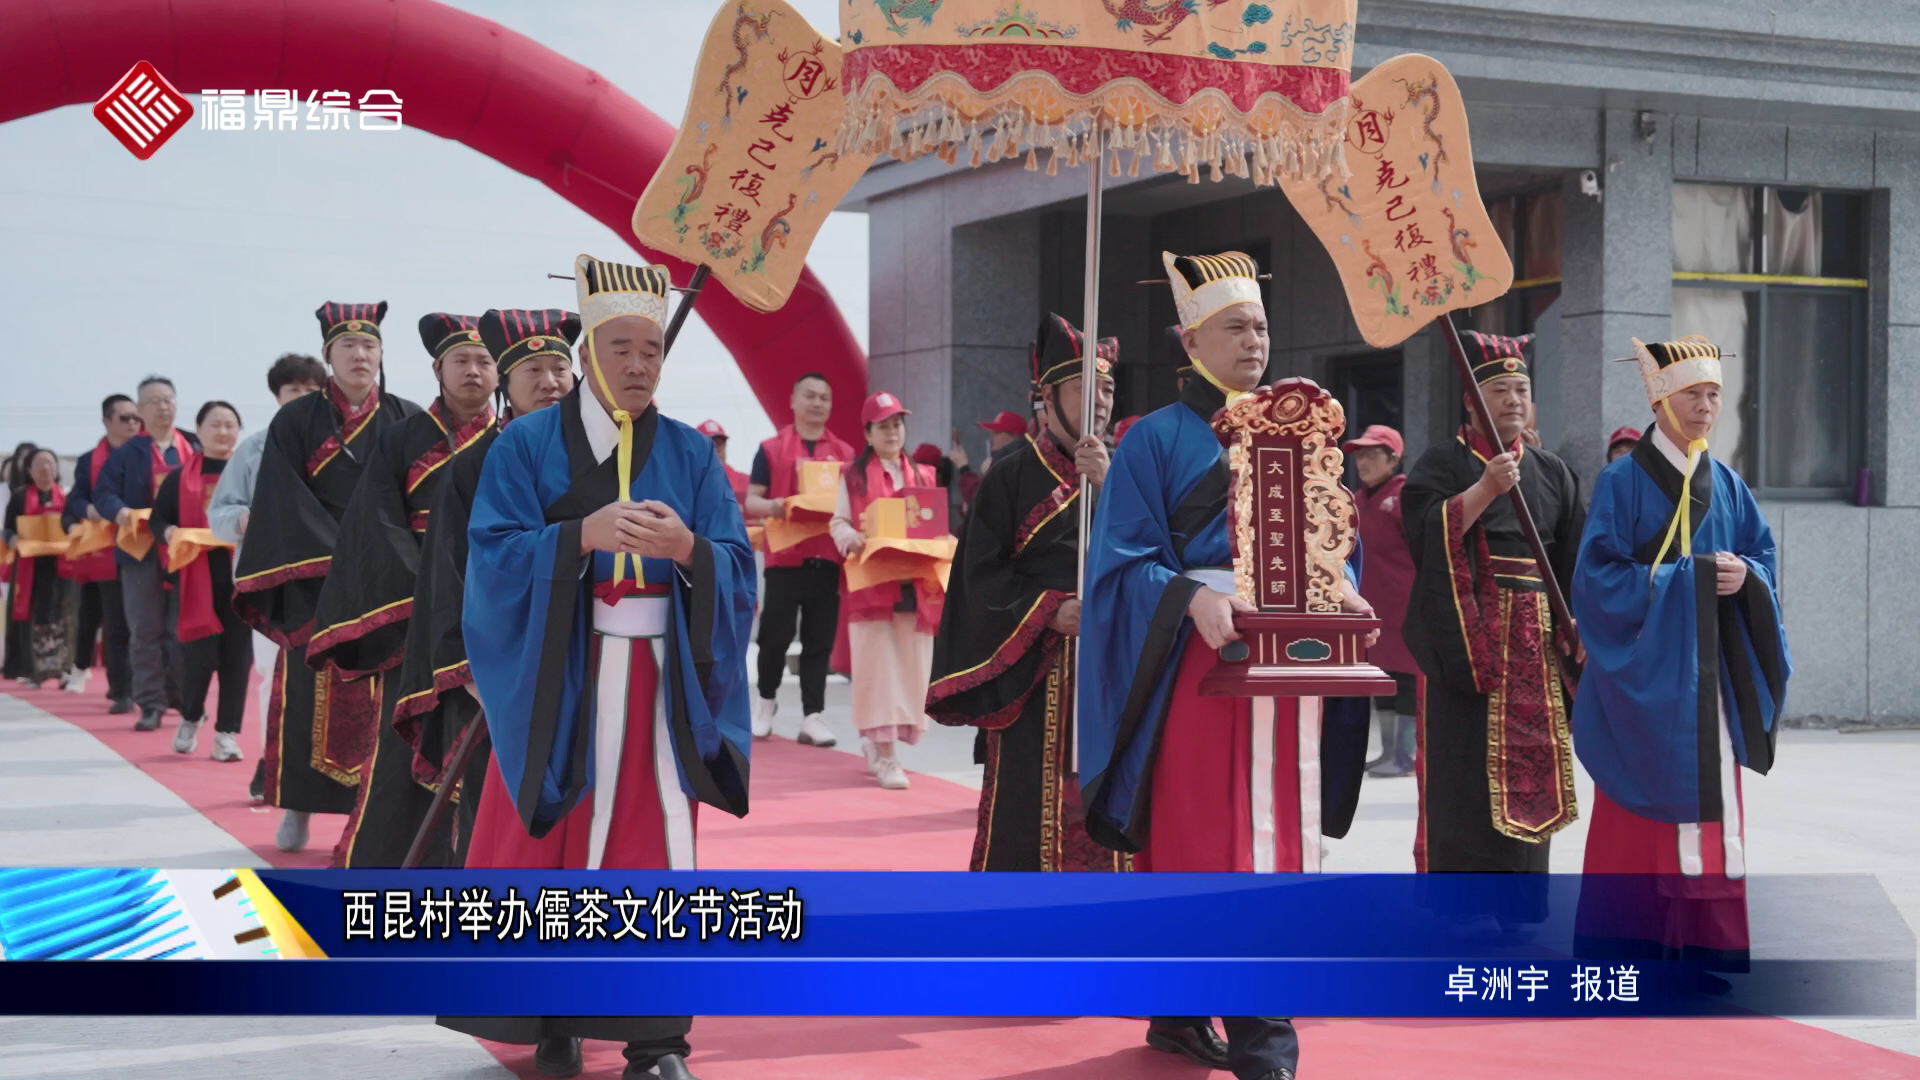 西昆村举办儒茶文化节活动